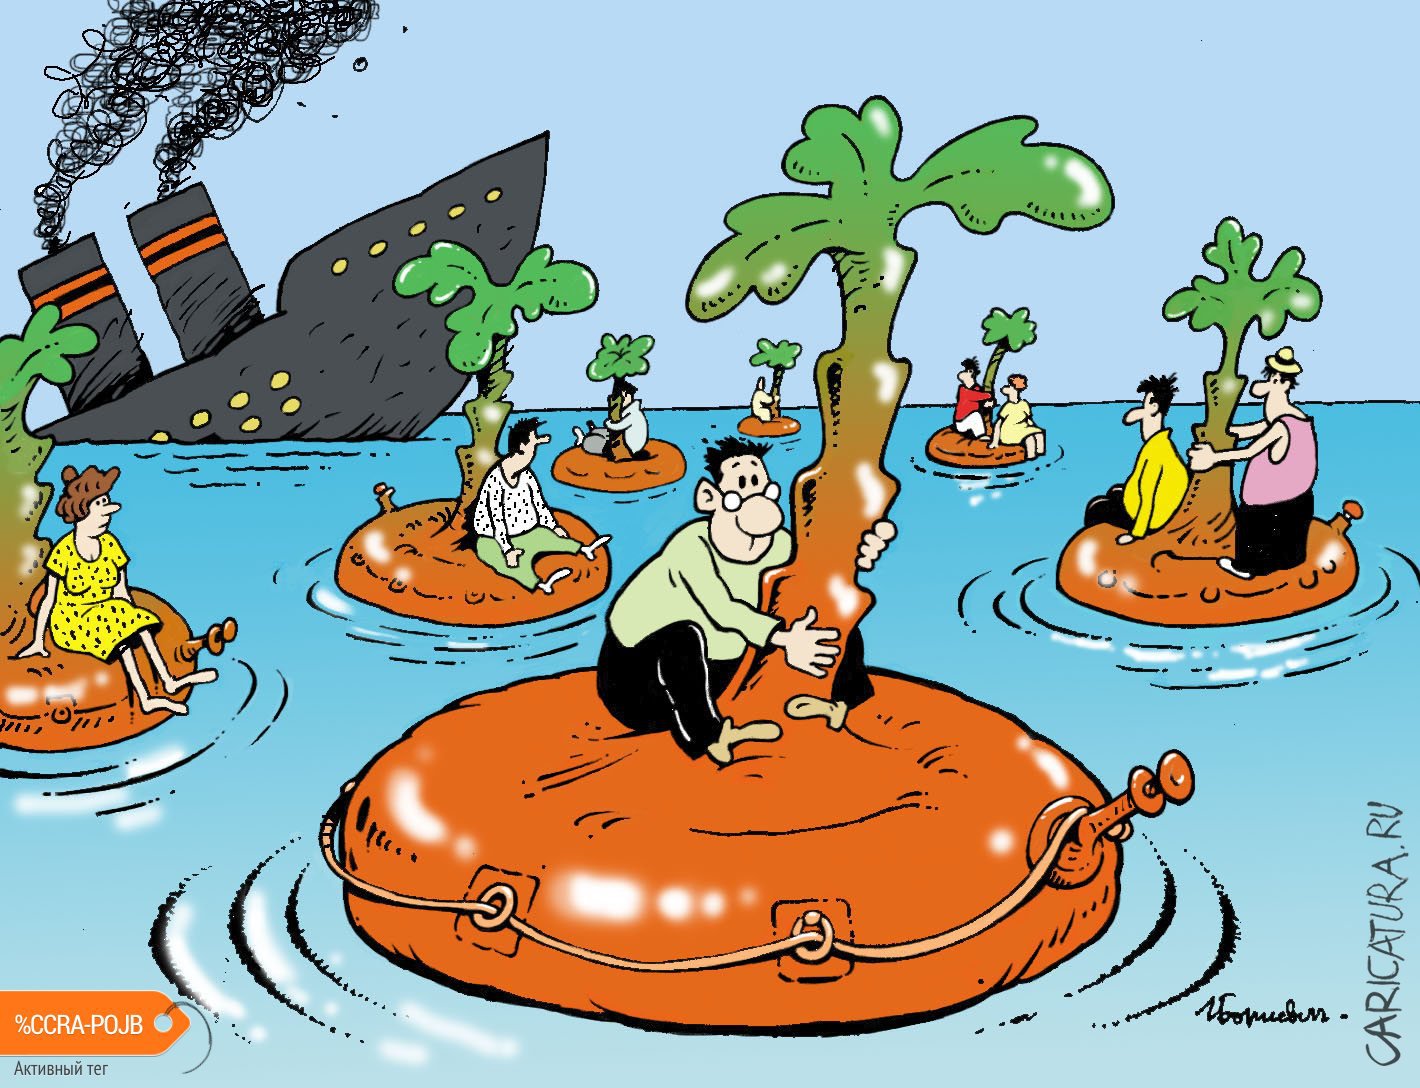 Карикатура "Надувные острова", Игорь Елистратов